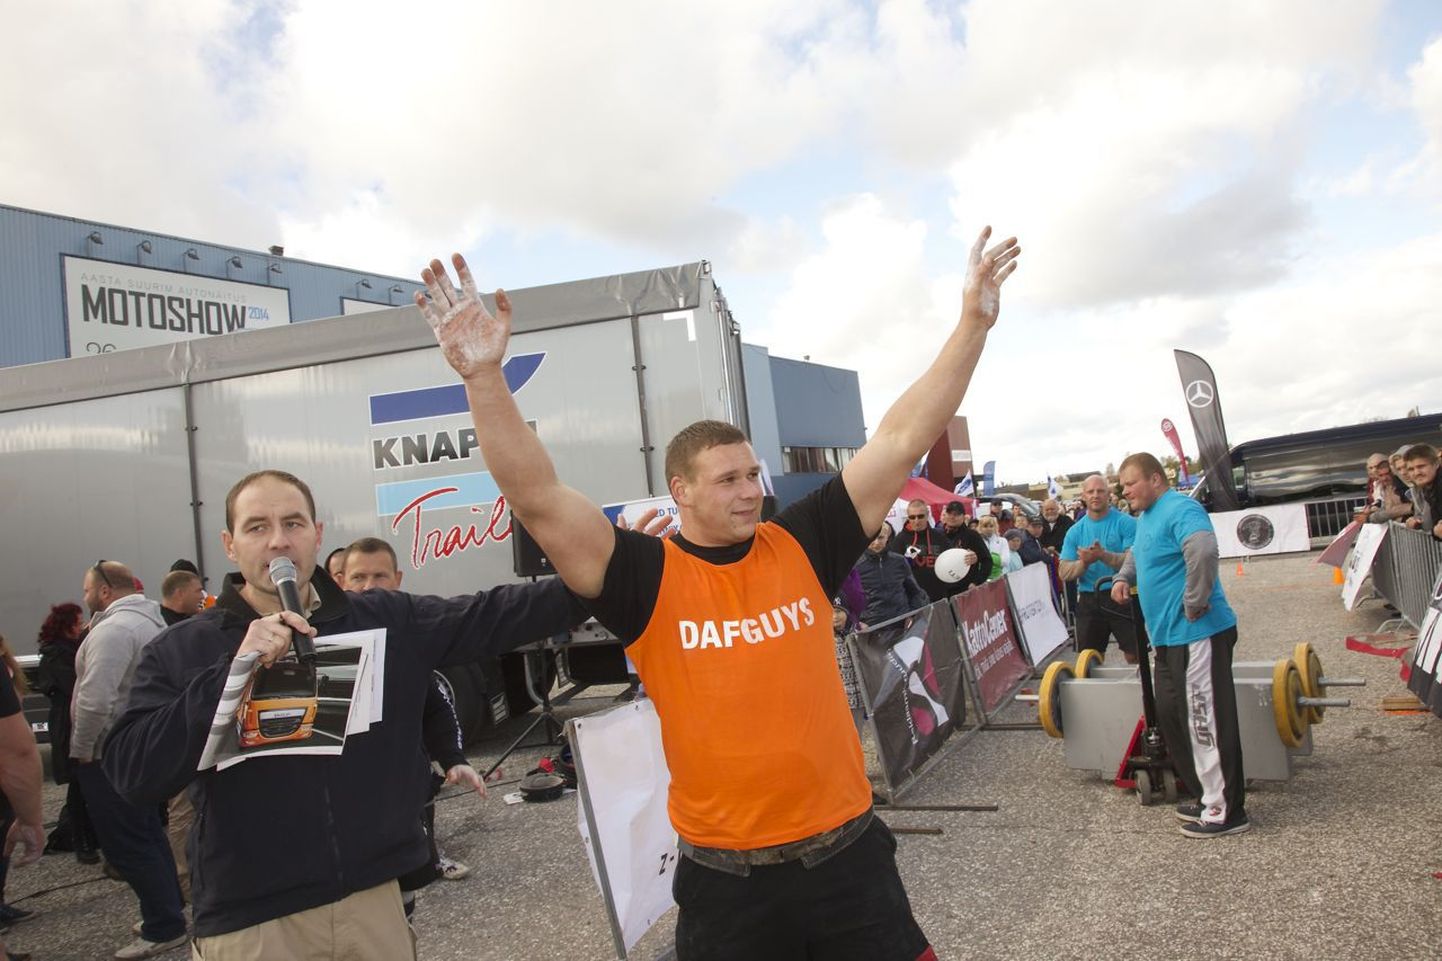 Lätlane Janis Slecku püstitas Tartus 350 kg kaalunud kohvrite kandmises uue maailmarekordi distantsiga 40,6 m.